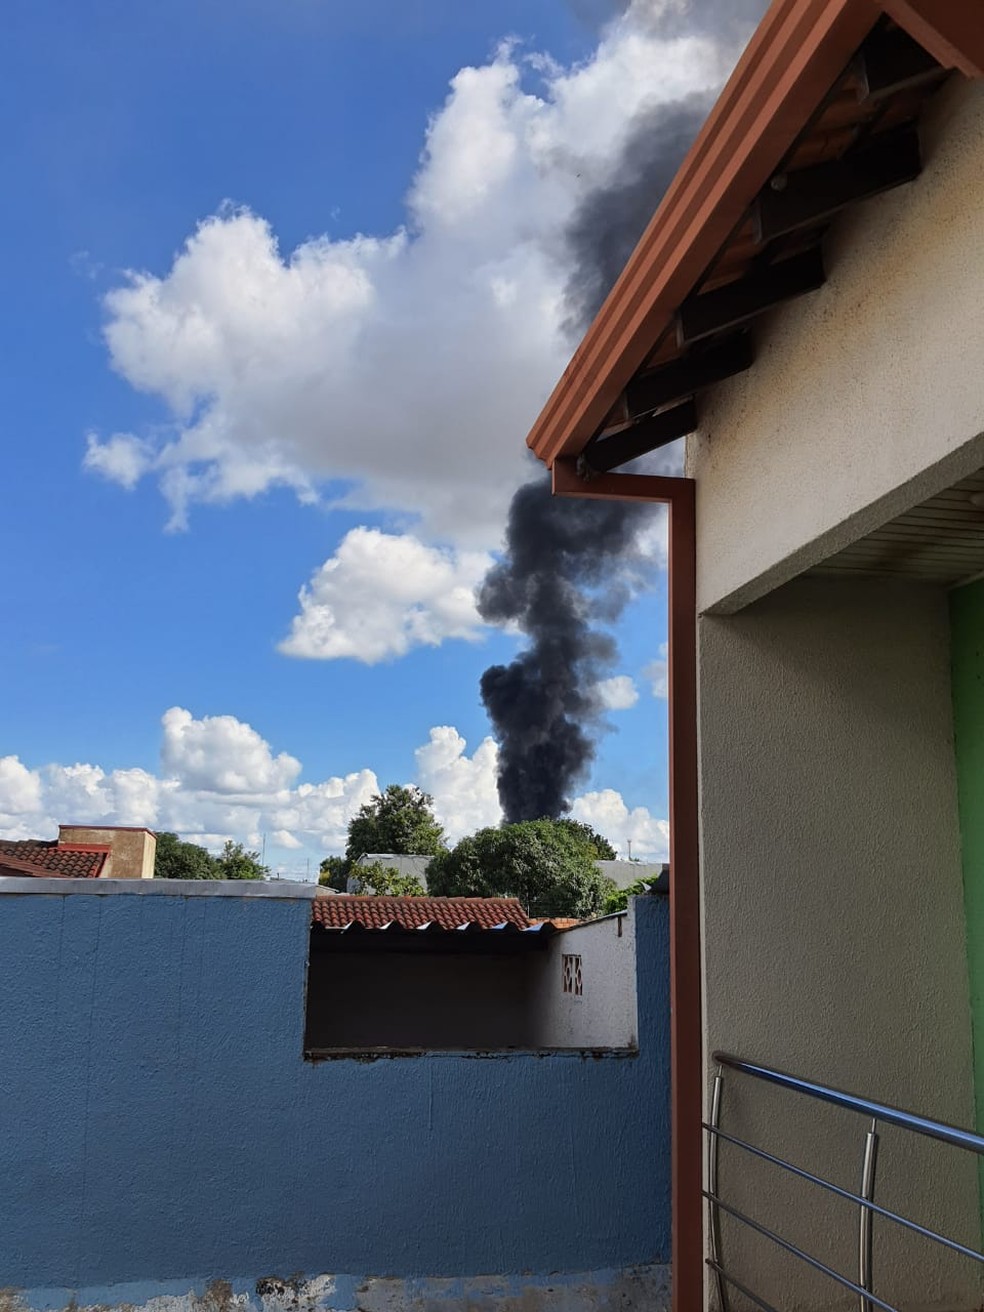 Moradores de bairros próximos registram fumaça do incêndio na capital de RO — Foto: Arquivo pessoal